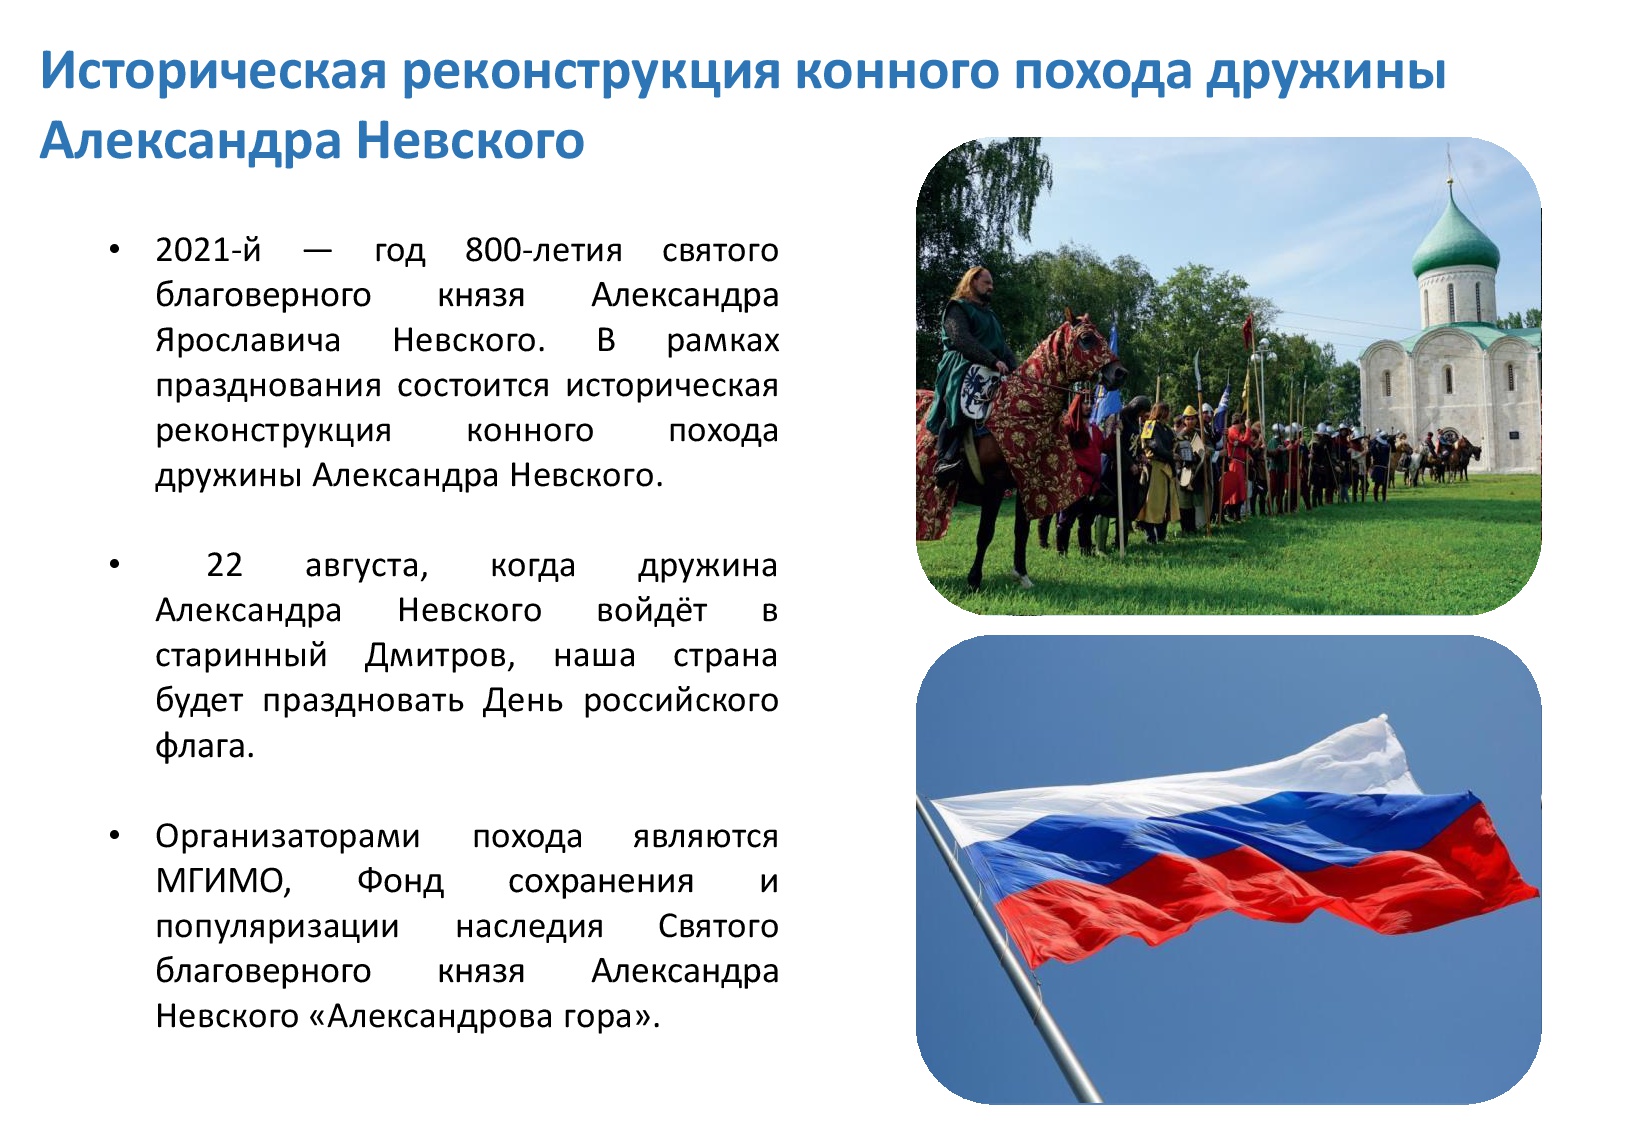 День государственного флага России